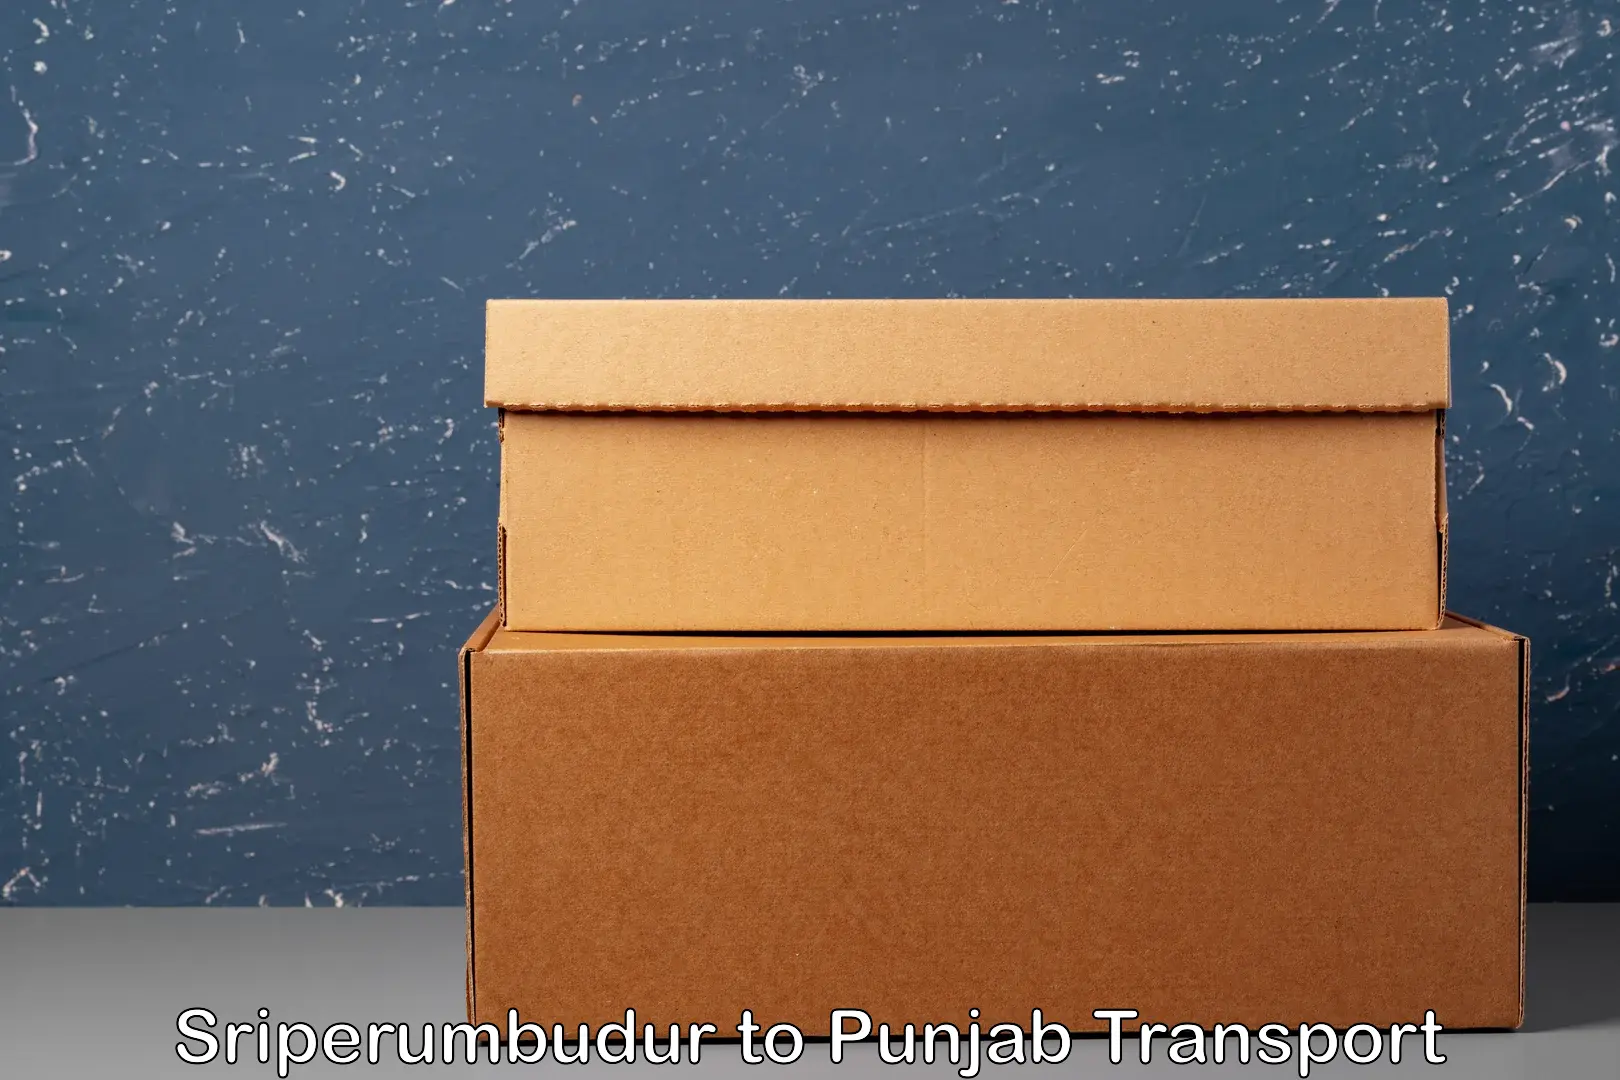 Bike transfer Sriperumbudur to Punjab